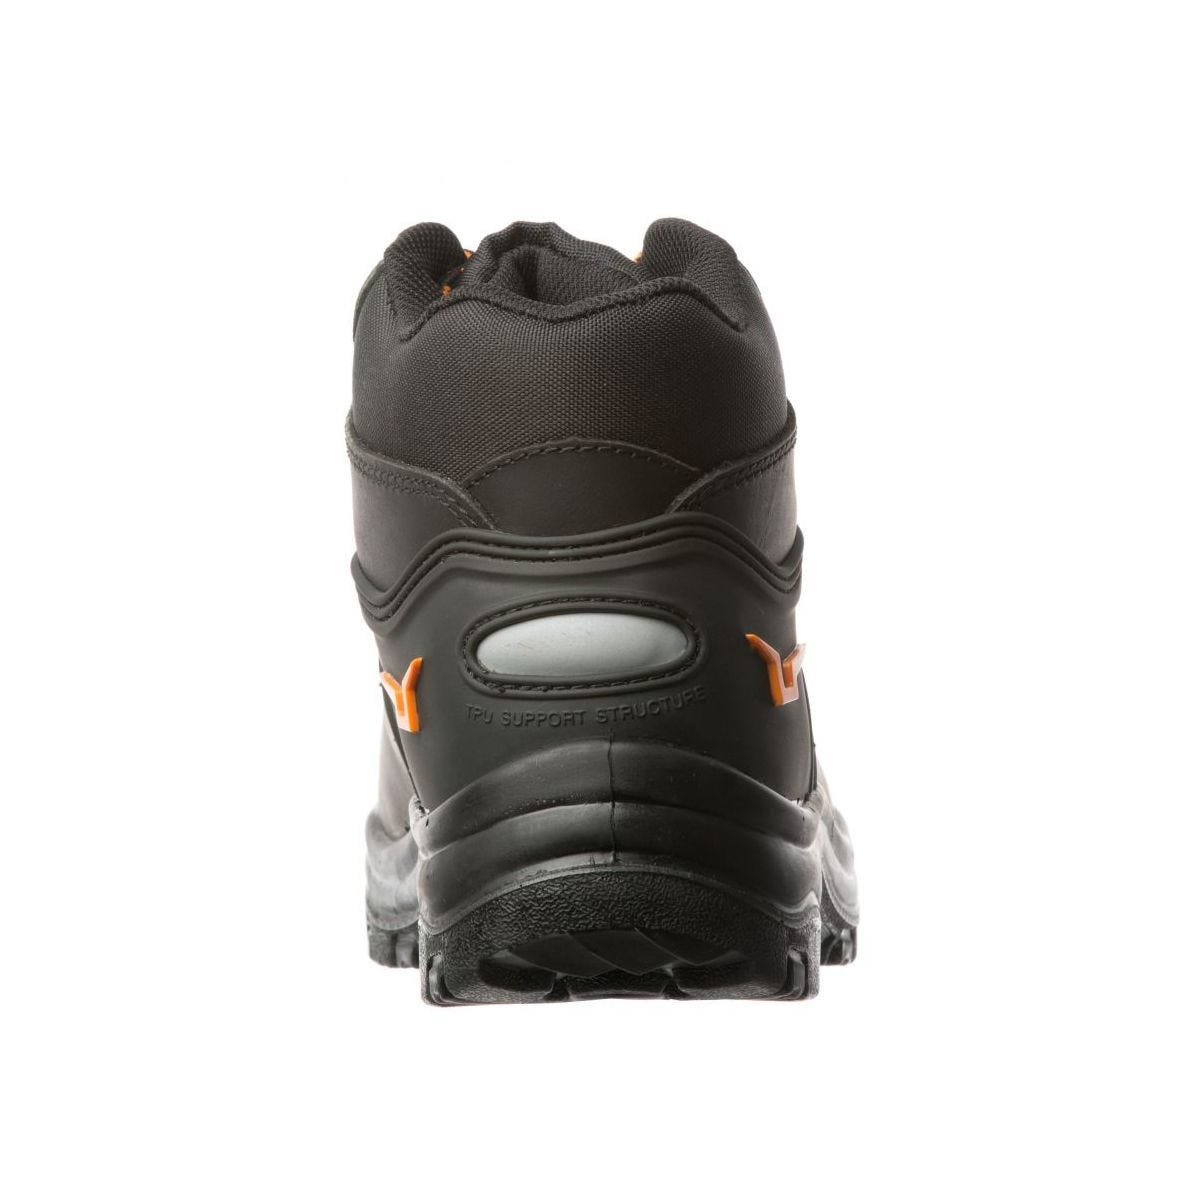 Chaussures de sécurité hautes S3 SRC OPAL composite Noir - Coverguard - Taille 38 3